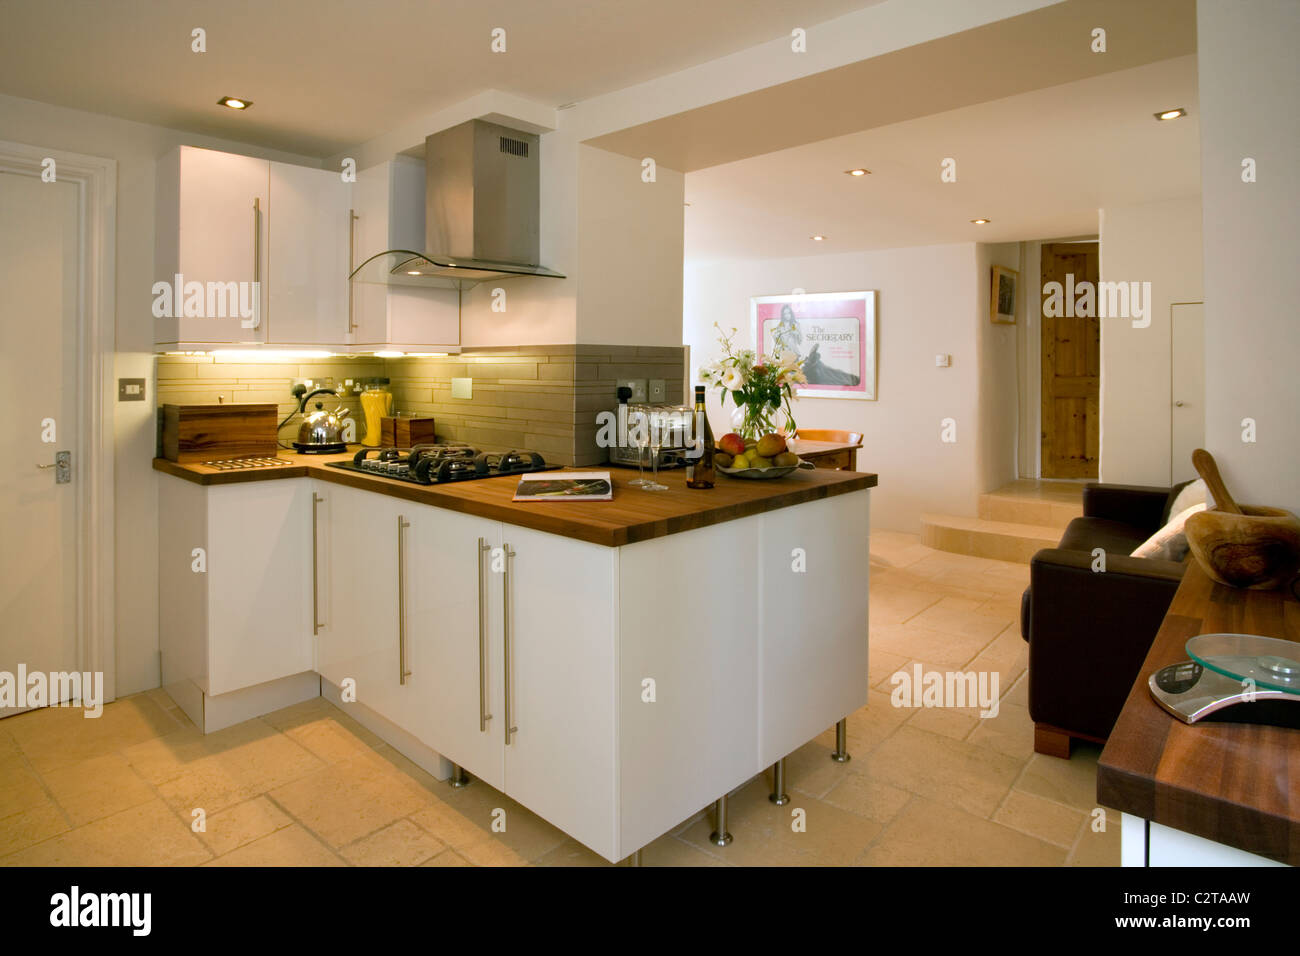 Stylish modern kitchen. Stock Photo